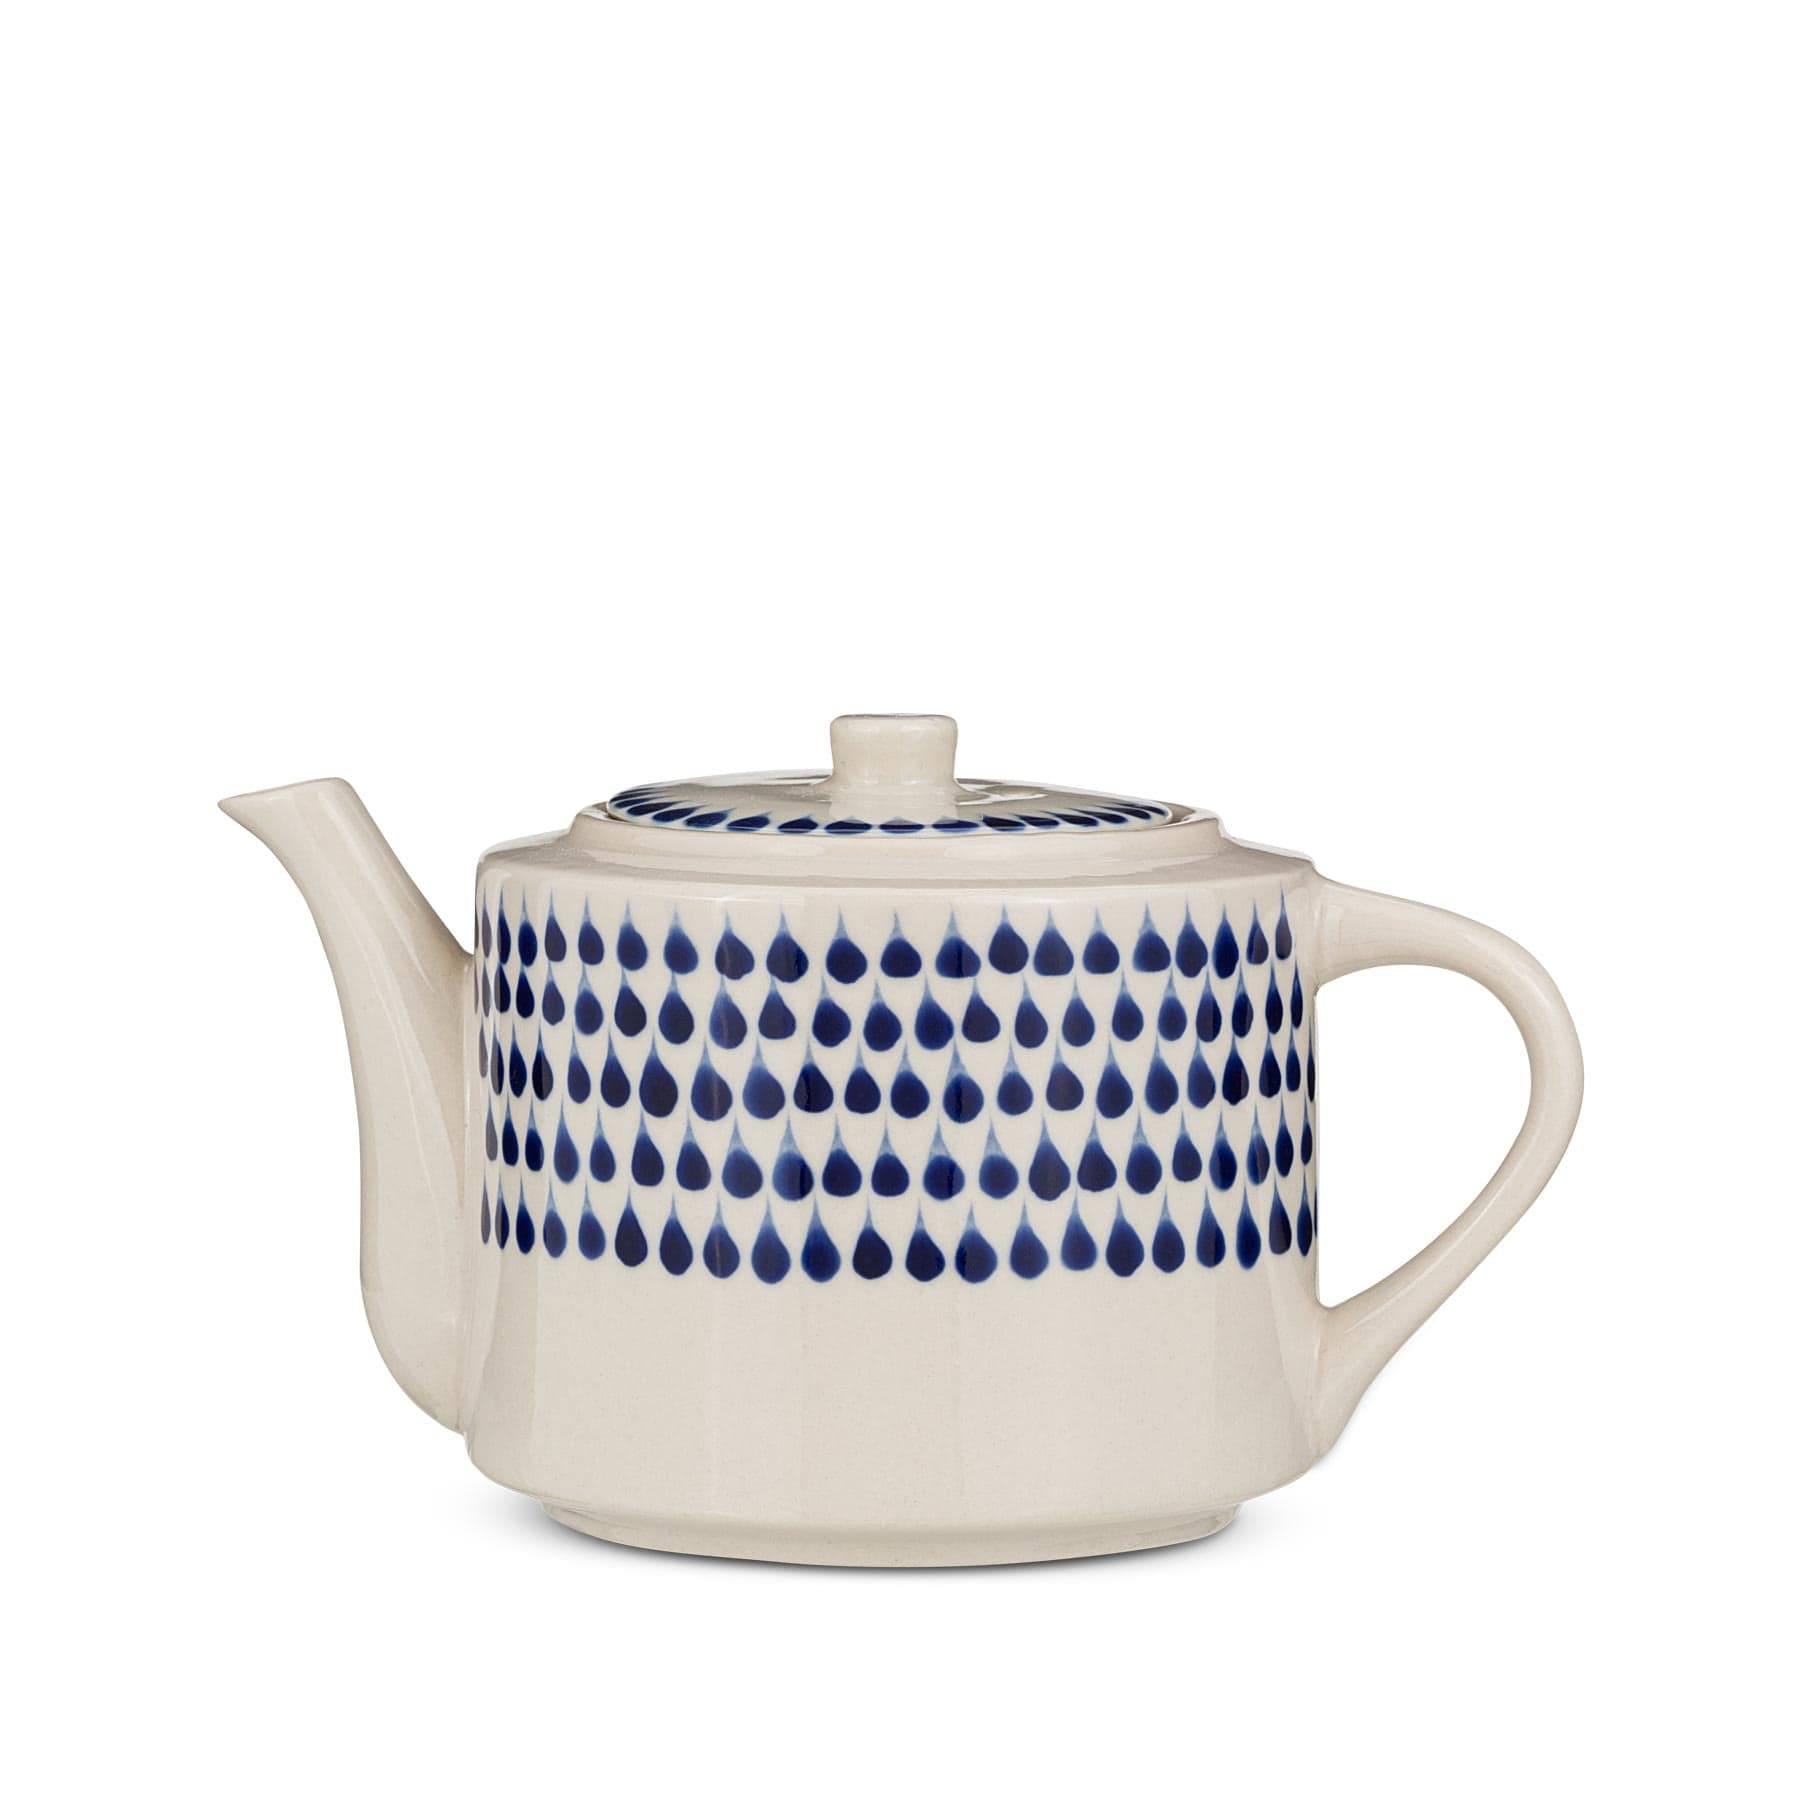 Indigo drop teapot